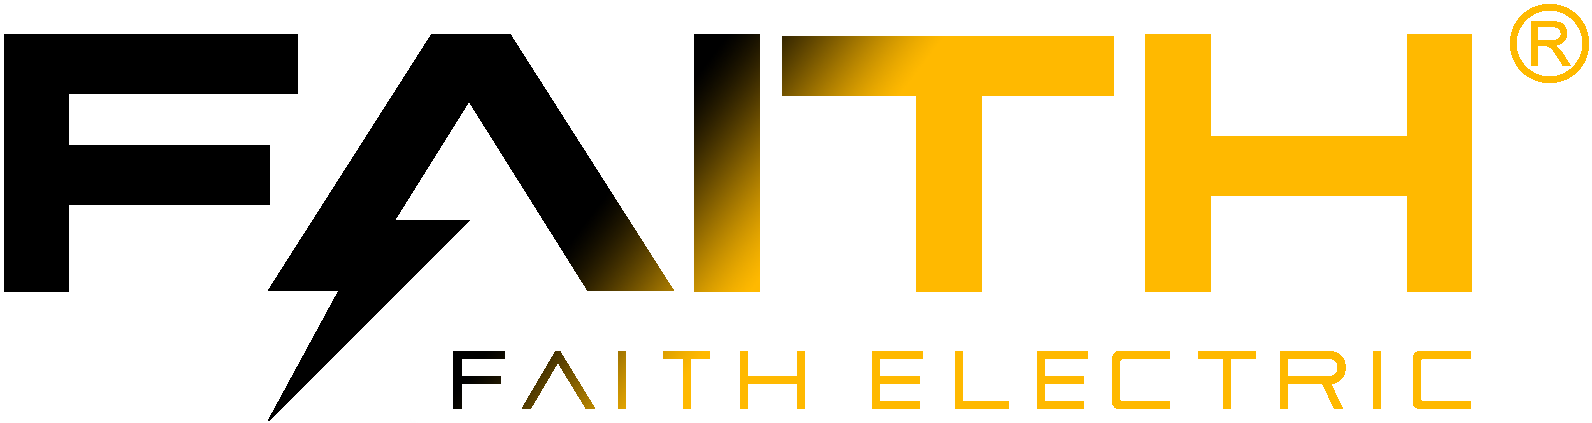 Iman logo listrik